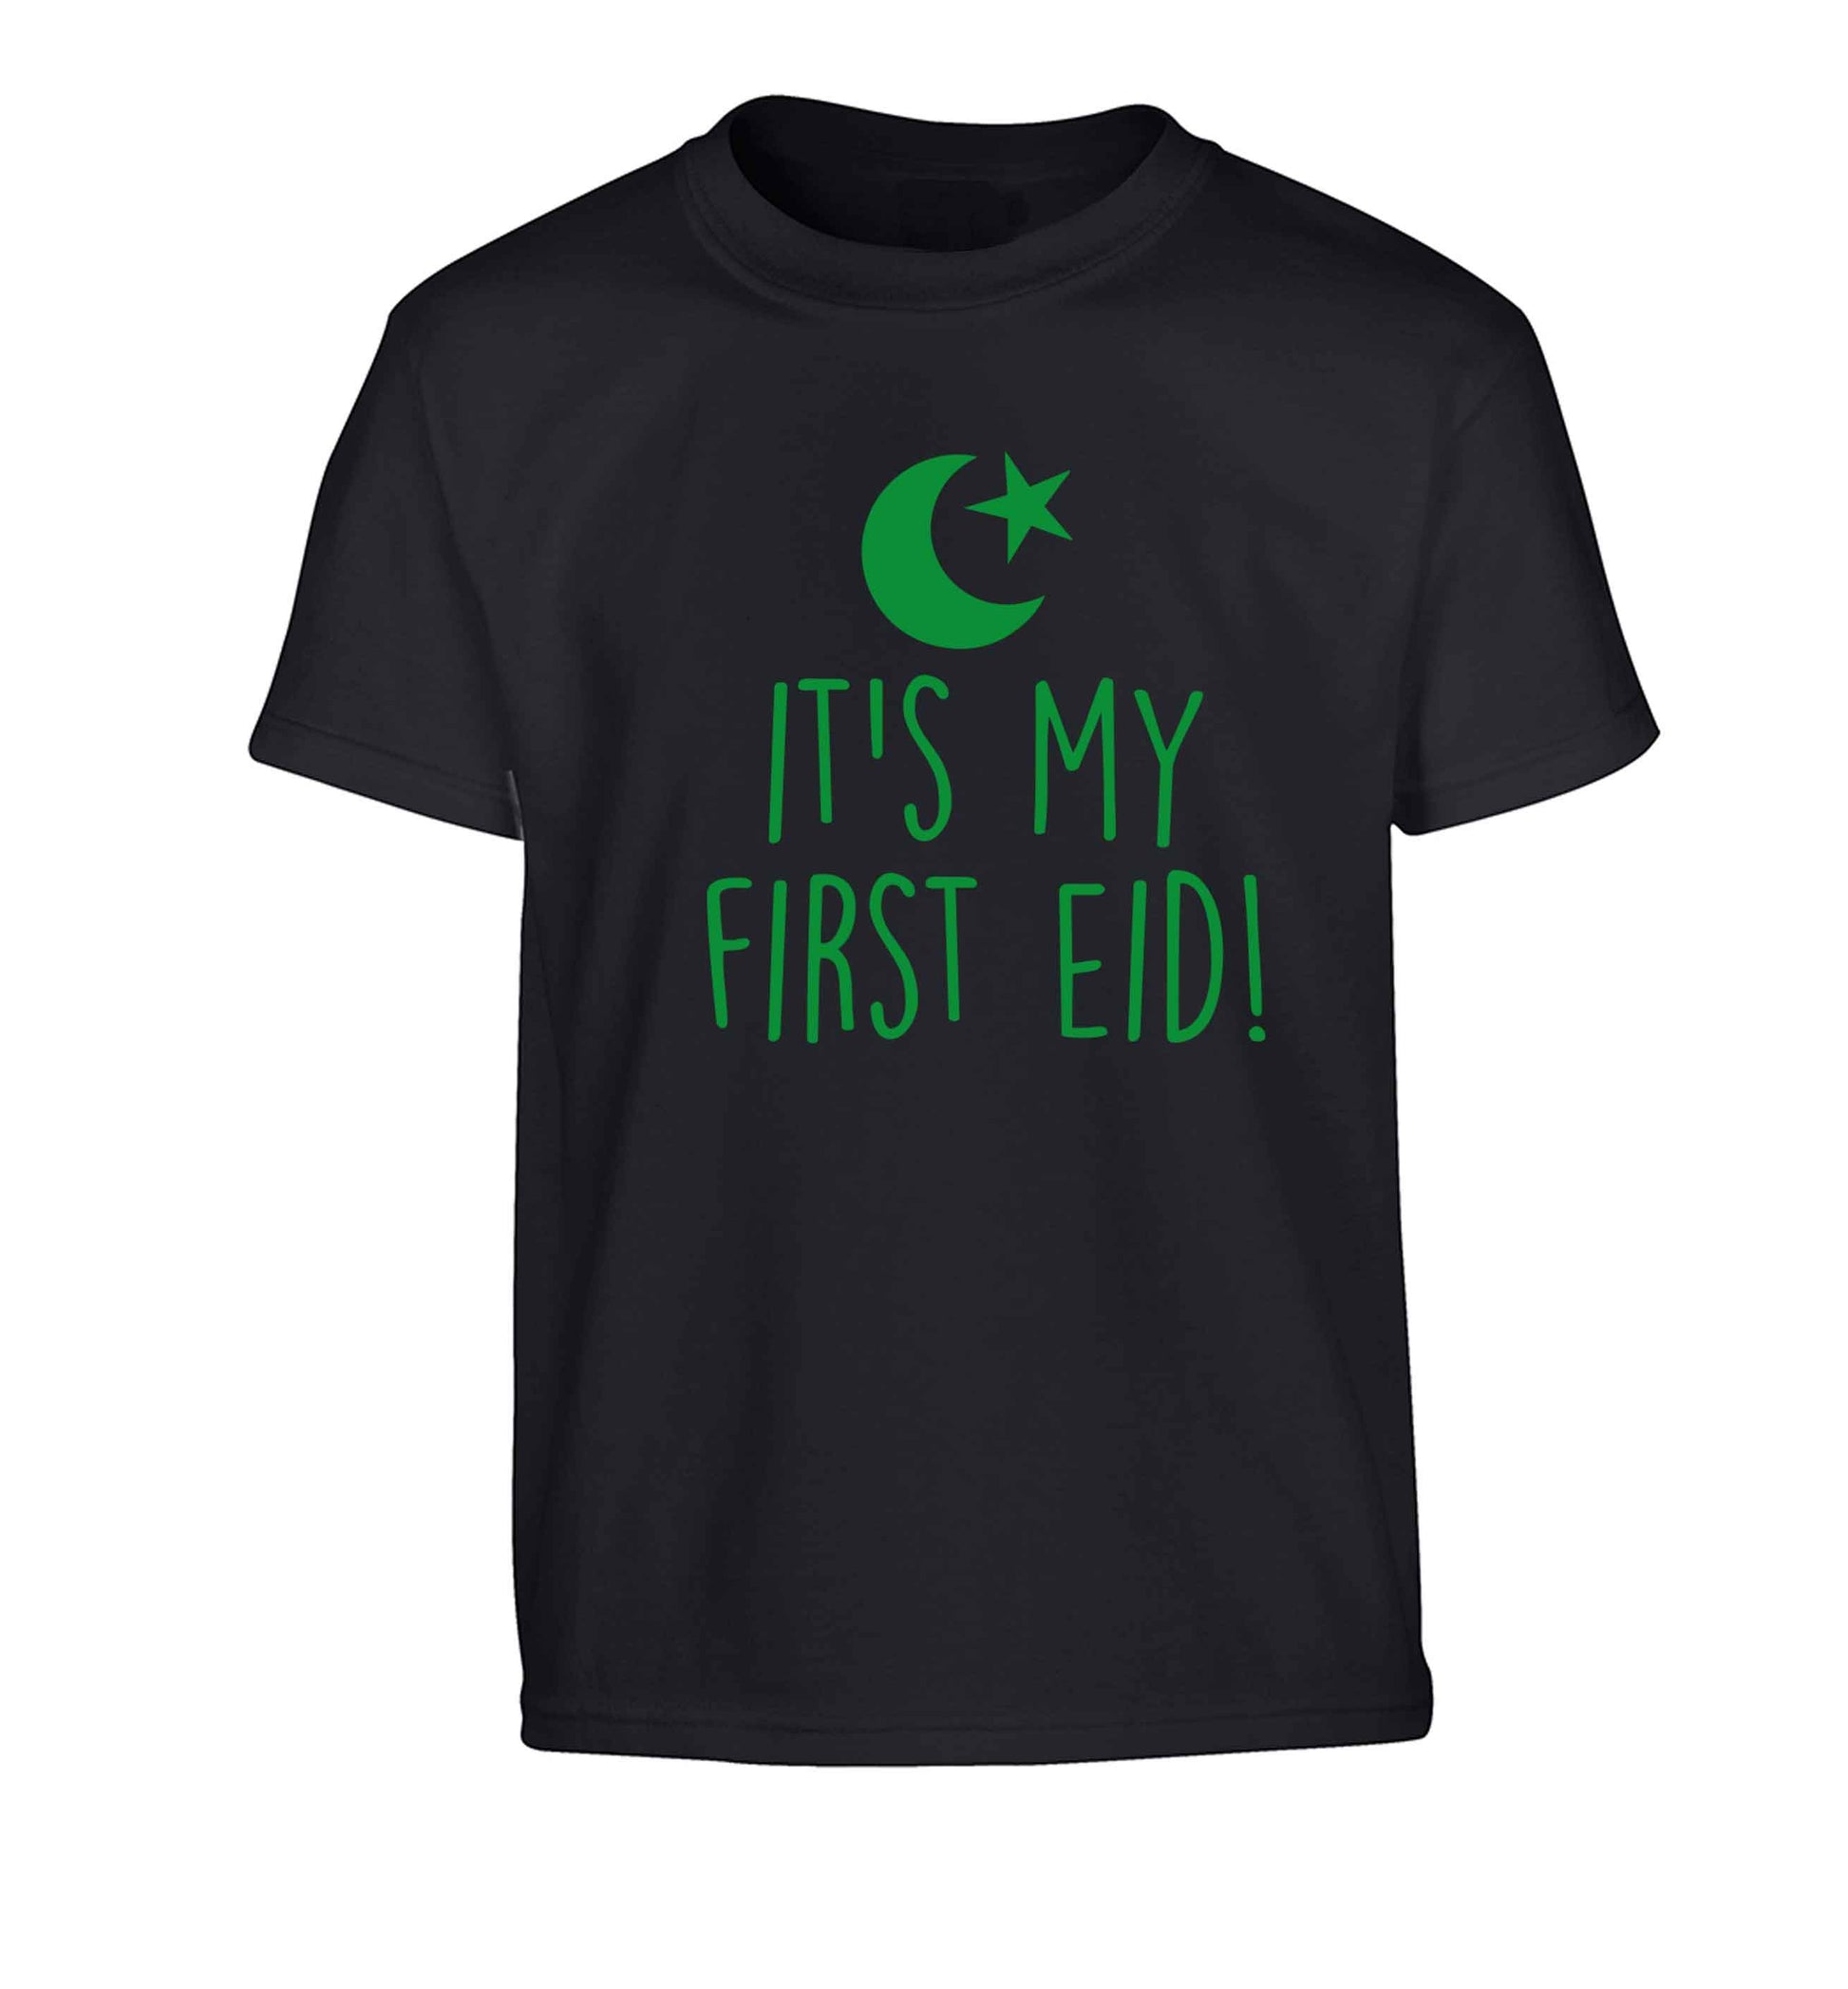 It's my first Eid Children's black Tshirt 12-13 Years